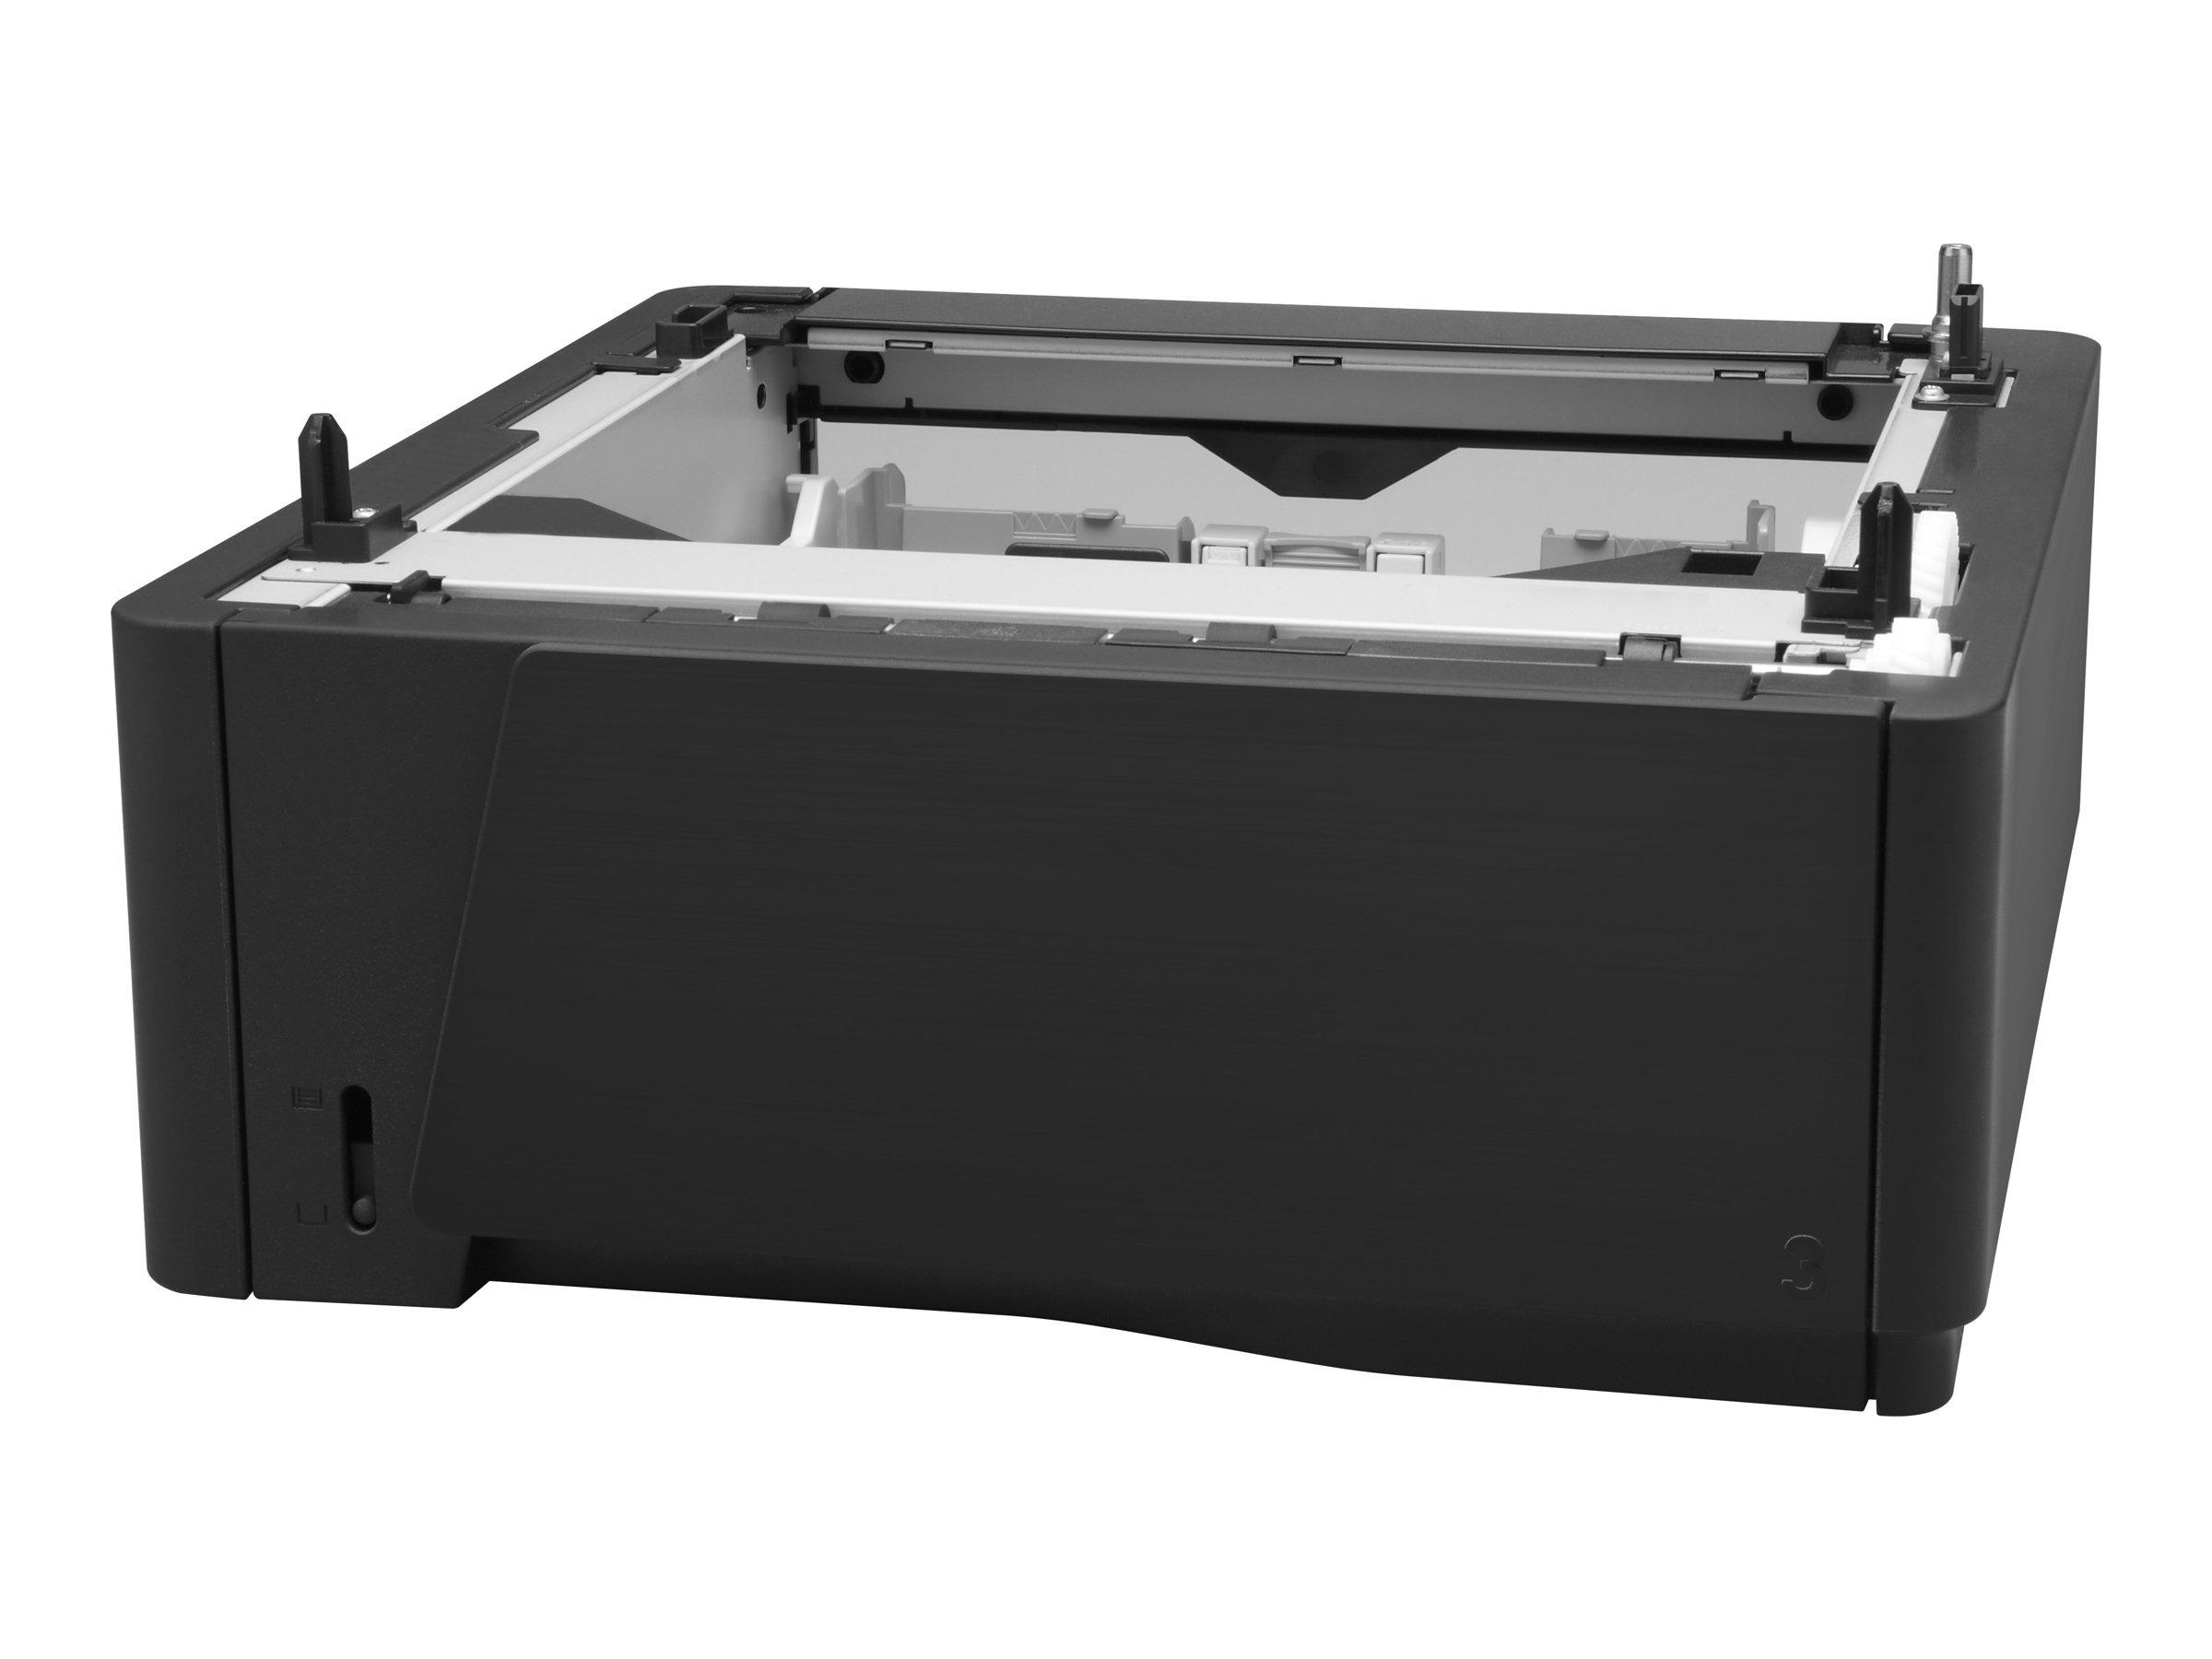 HP - Medienfach / Zuführung - 500 Blätter in 1 Schubladen (Trays) - Schwarz - für LaserJet Pro 400 M401a, 400 M401d, 400 M401dn, 400 M401dne, 400 M401dw, 400 M401n